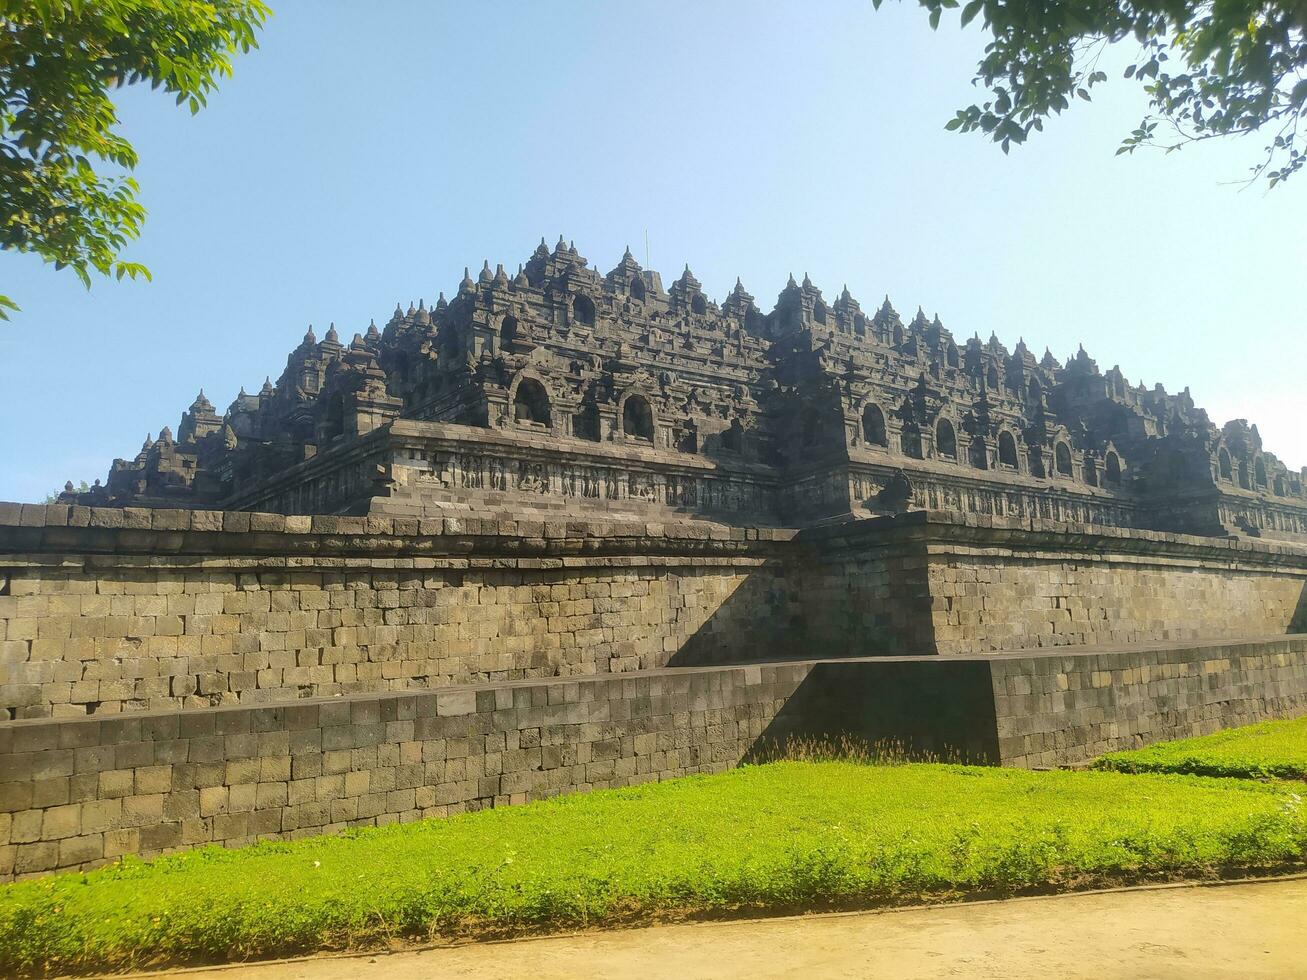 visie van borobudur tempel, een van de vraagt zich af van de wereld in Indonesië foto